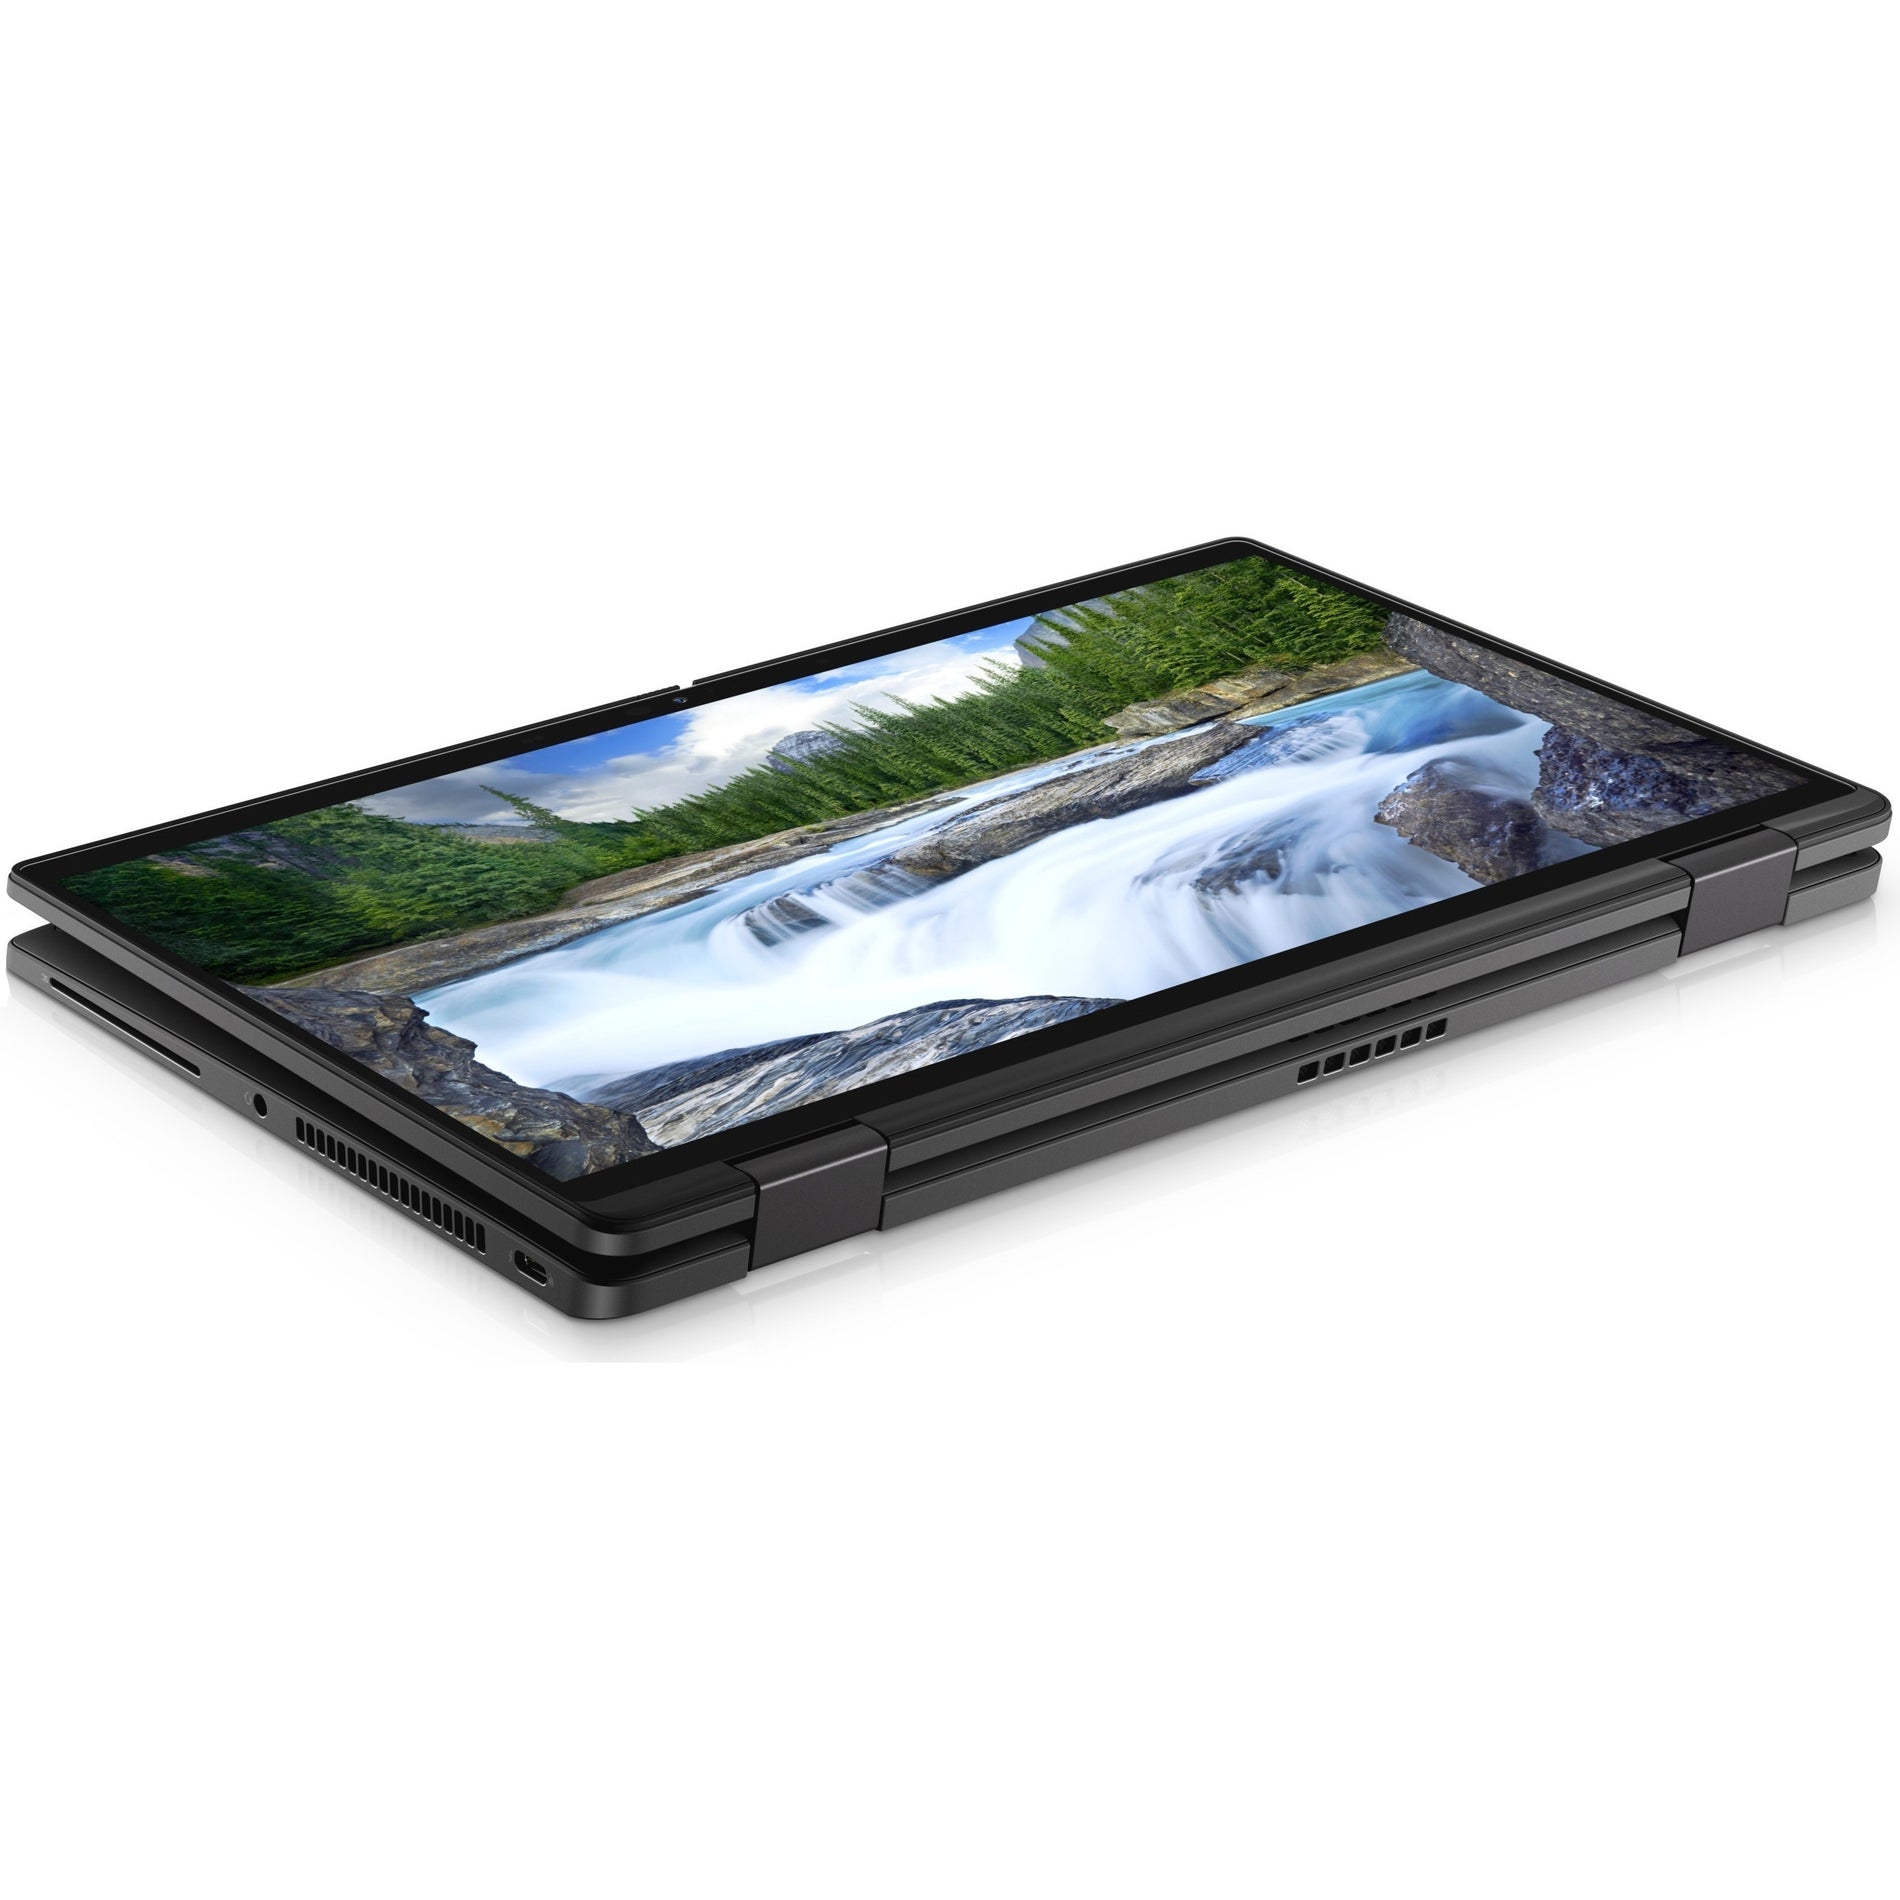 Dell RGRW0 Latitude 7420 2-in-1 Notebook, Core i5, 8GB RAM, 256GB SSD, Windows 10 Pro